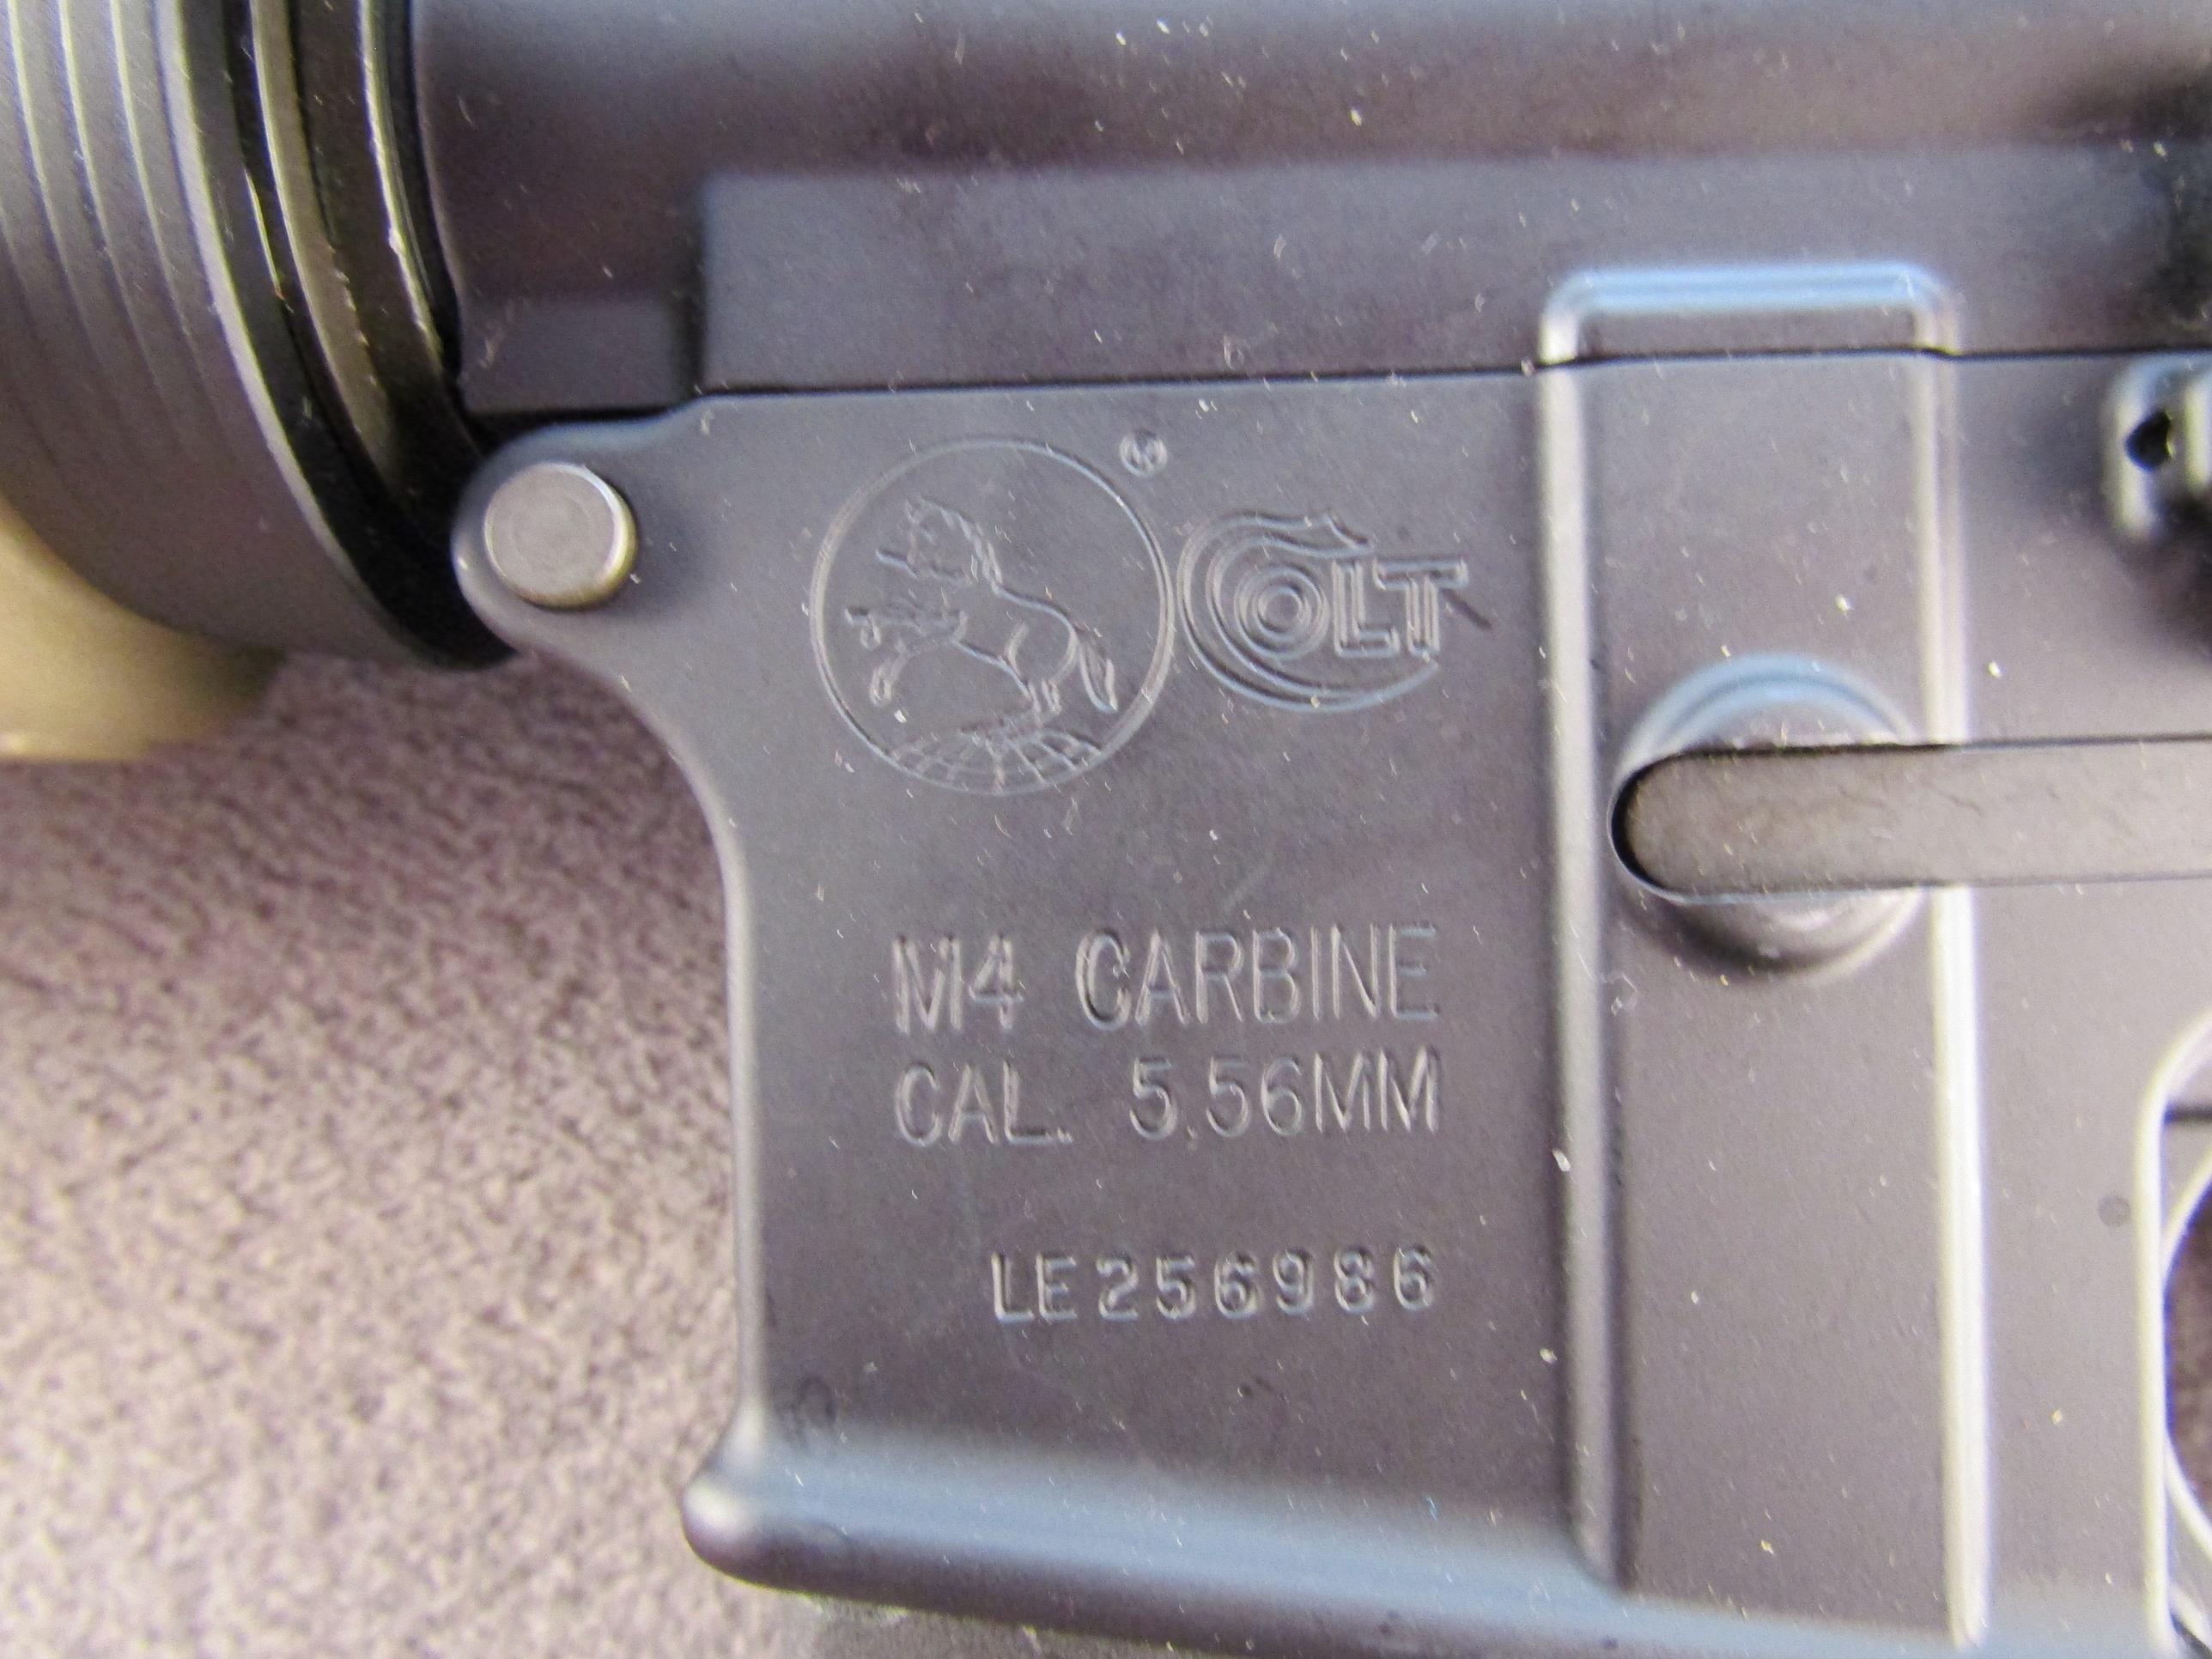 COLT Model M4 Carbine, Semi-Auto Rifle, 5.56, S#LE256986